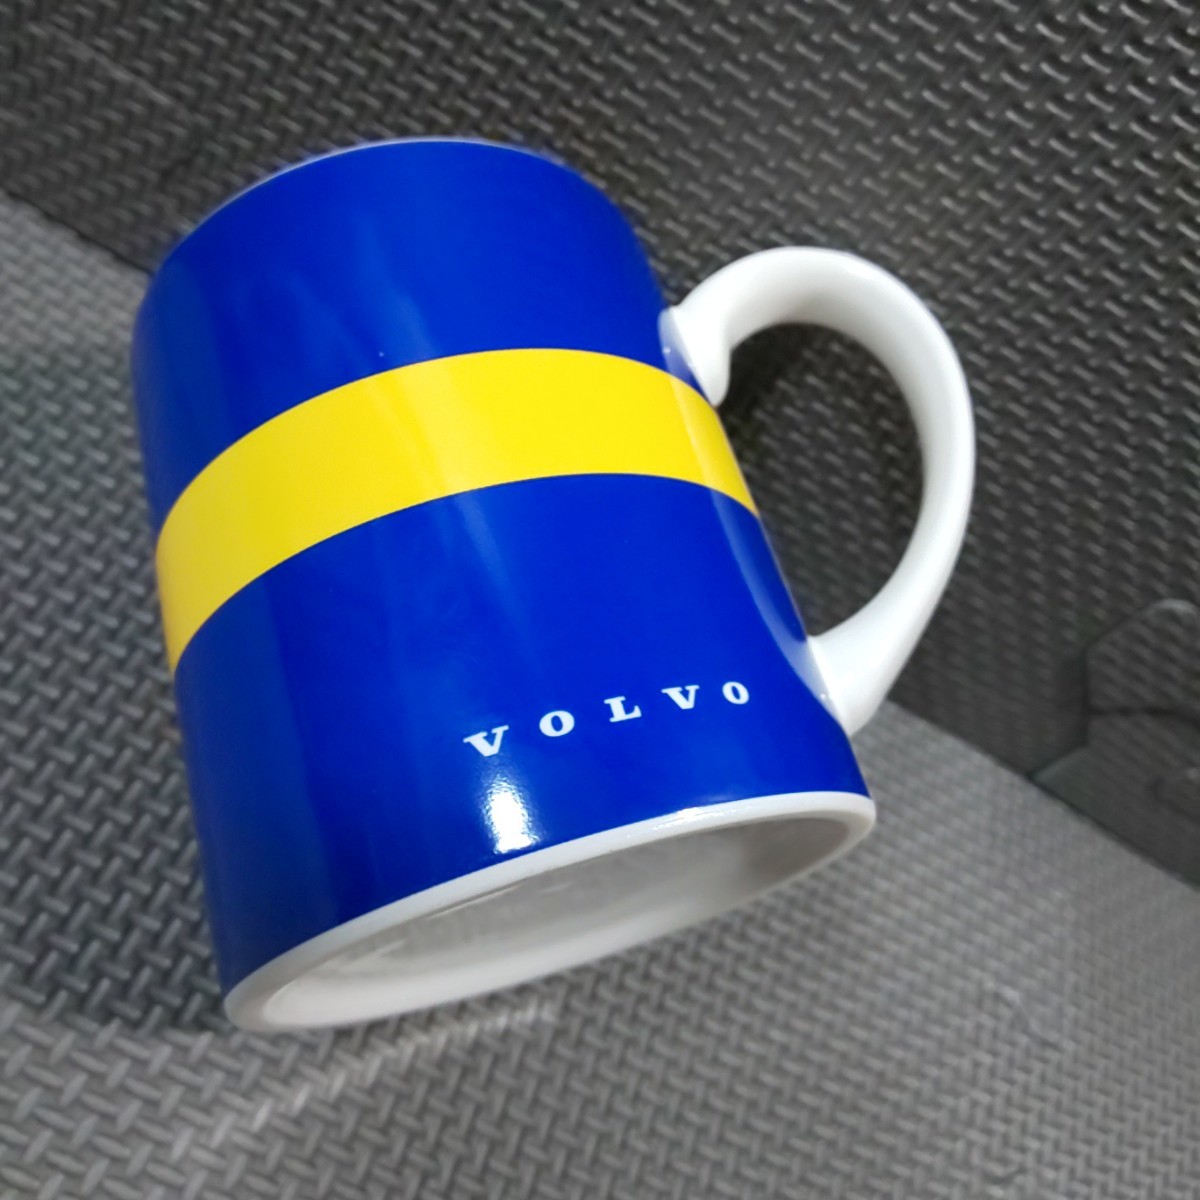 ボルボ「マグカップ 1個」陶器製 エルク VOLVO_画像5